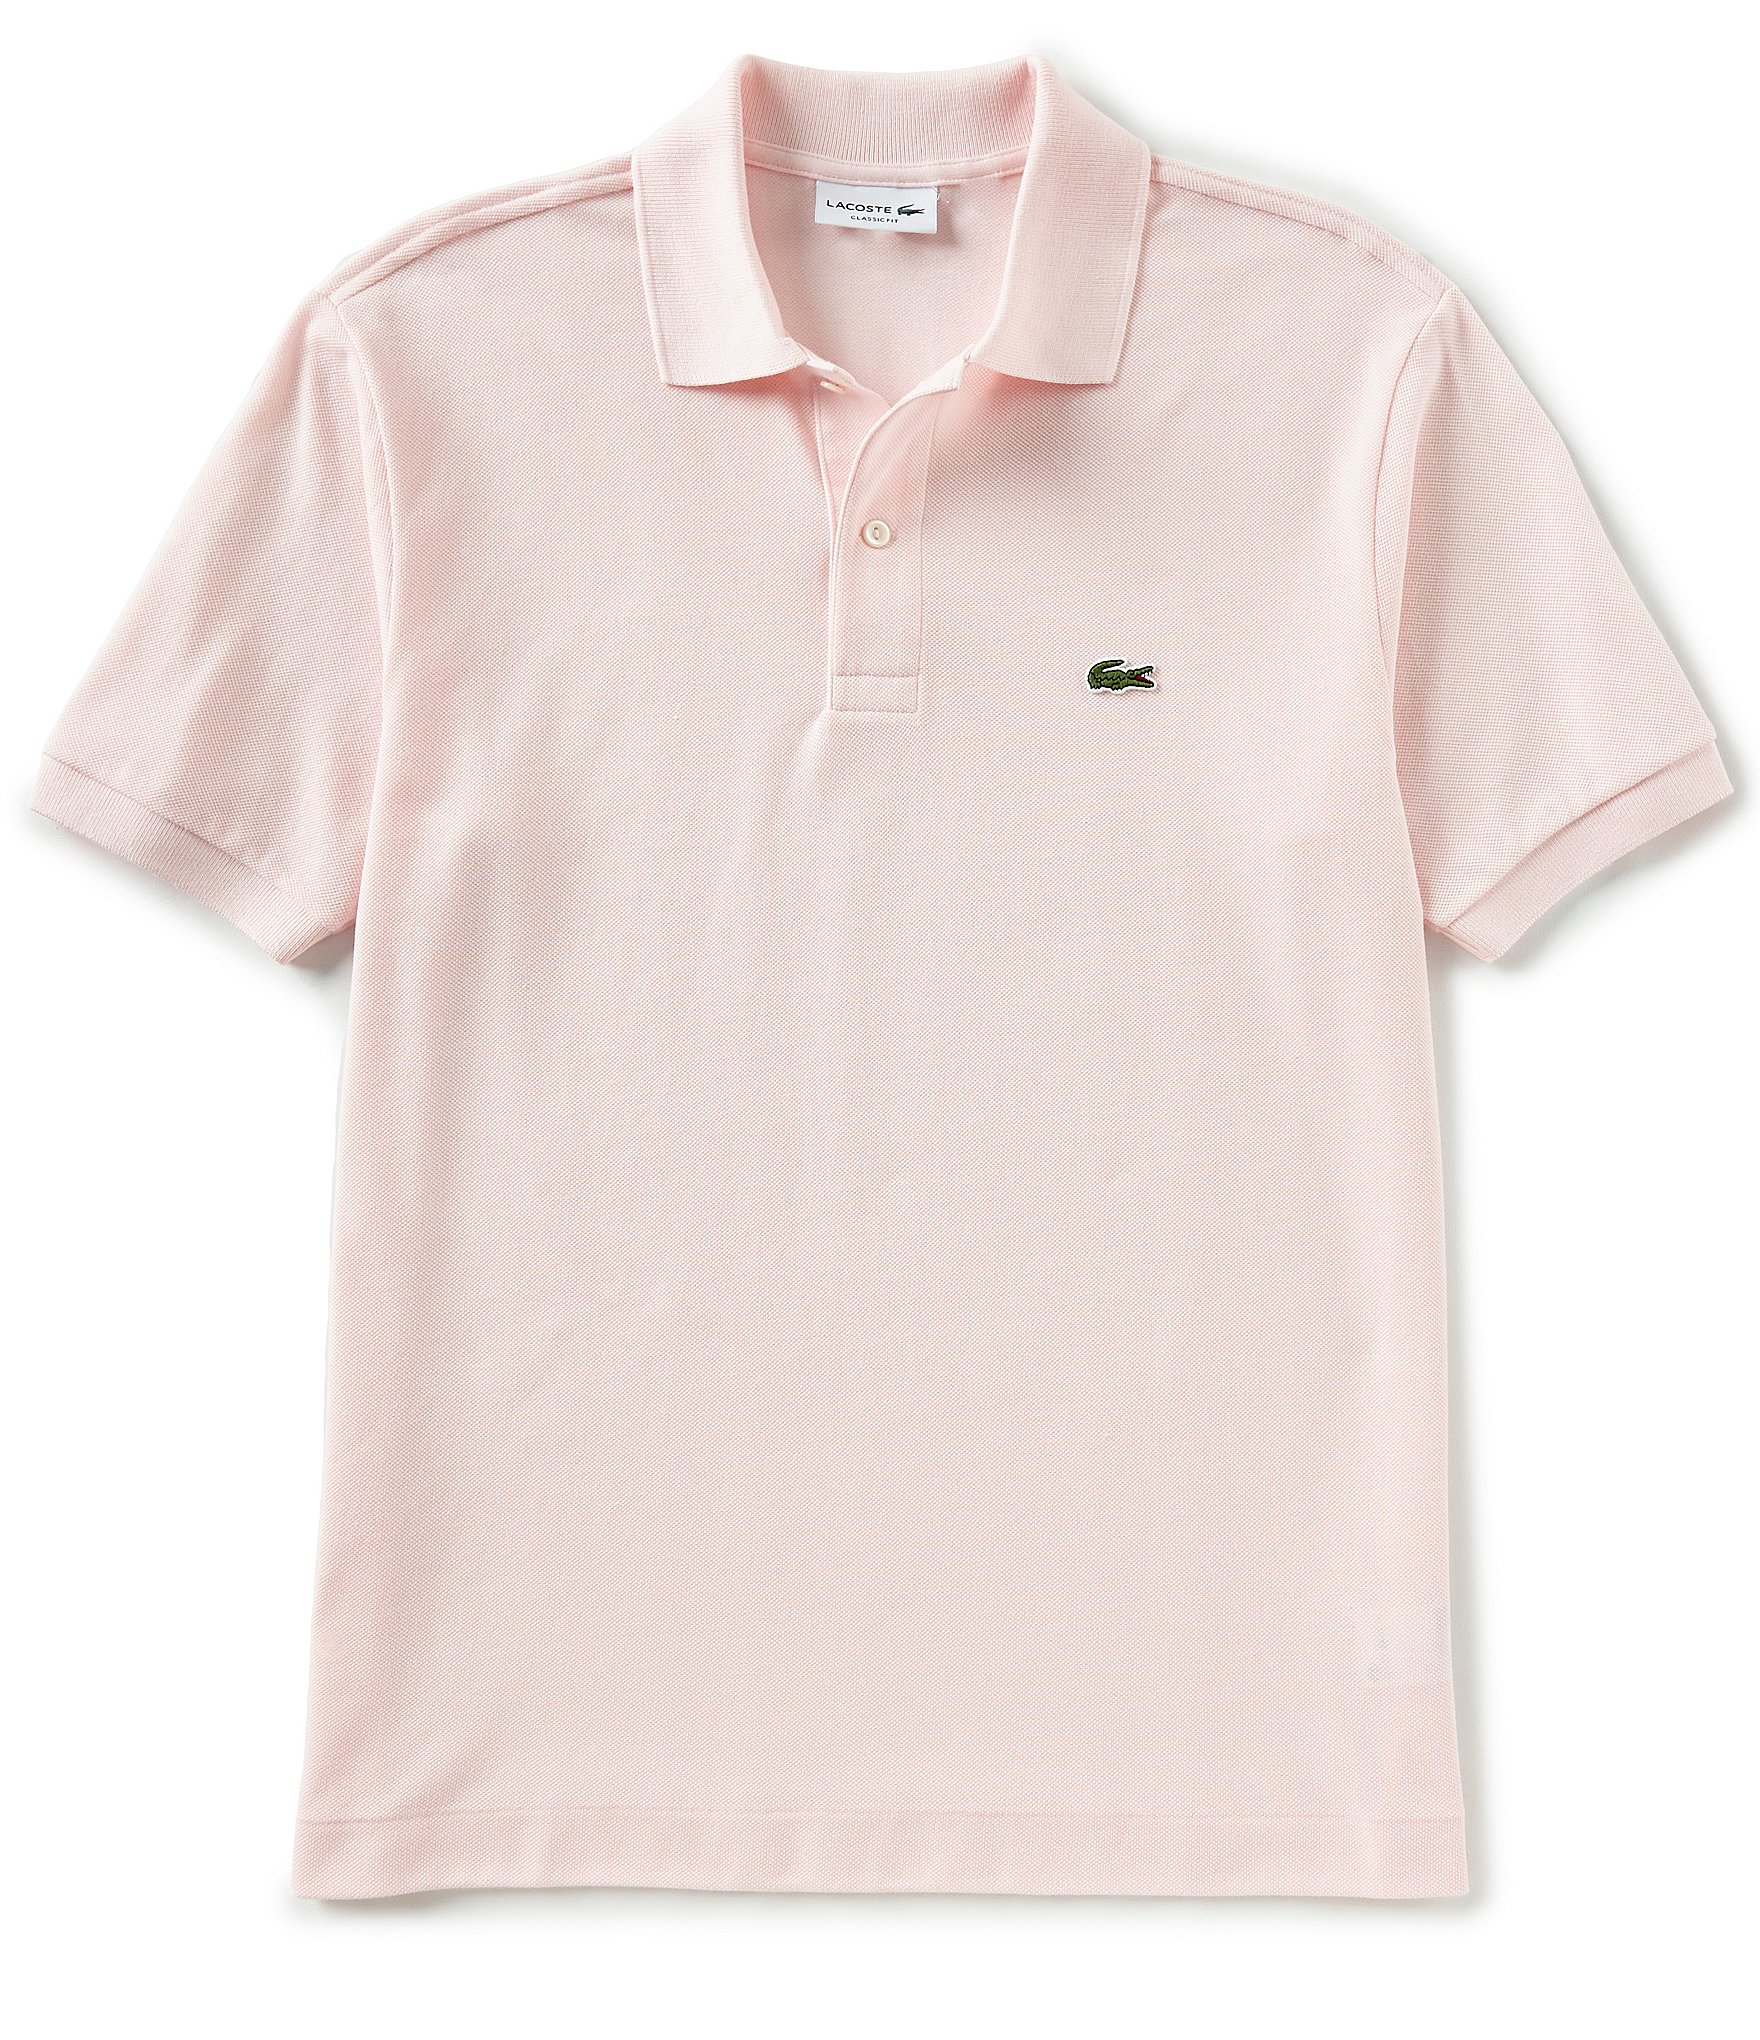 Benigno Varios patio Lacoste Classic Pique Short Sleeve Polo Shirt | Dillard's